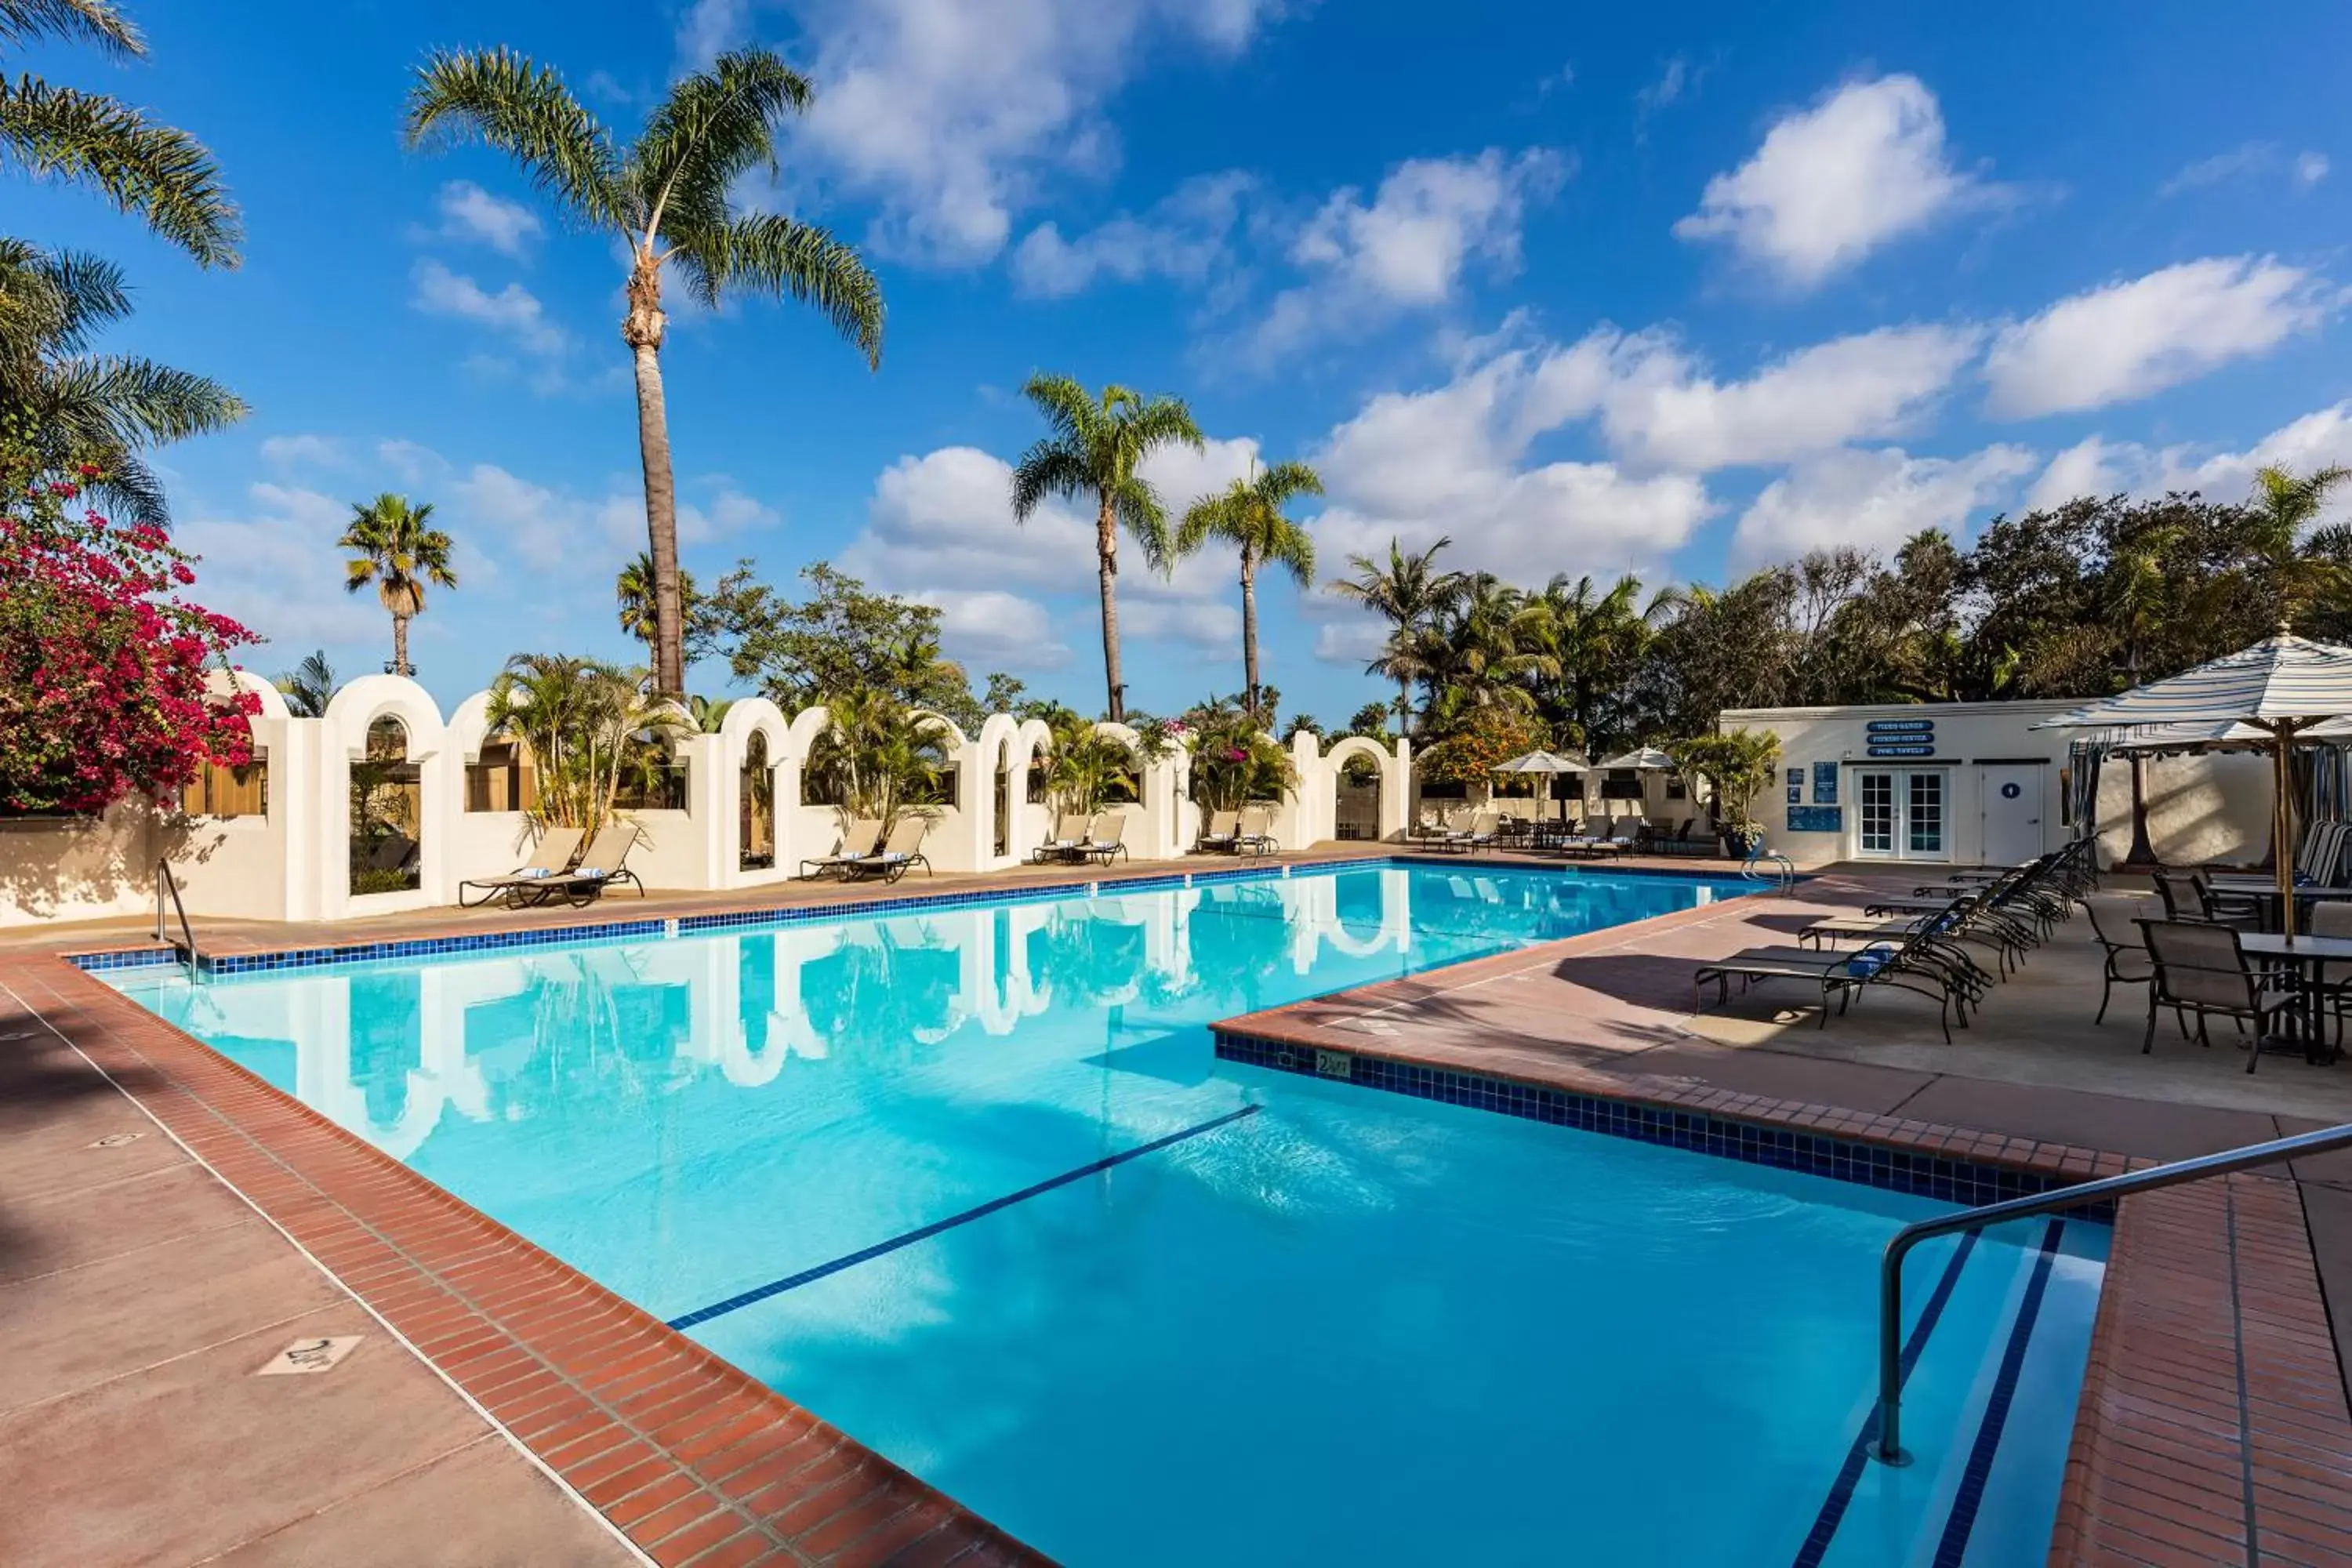 Swimming Pool in Bahia Resort Hotel